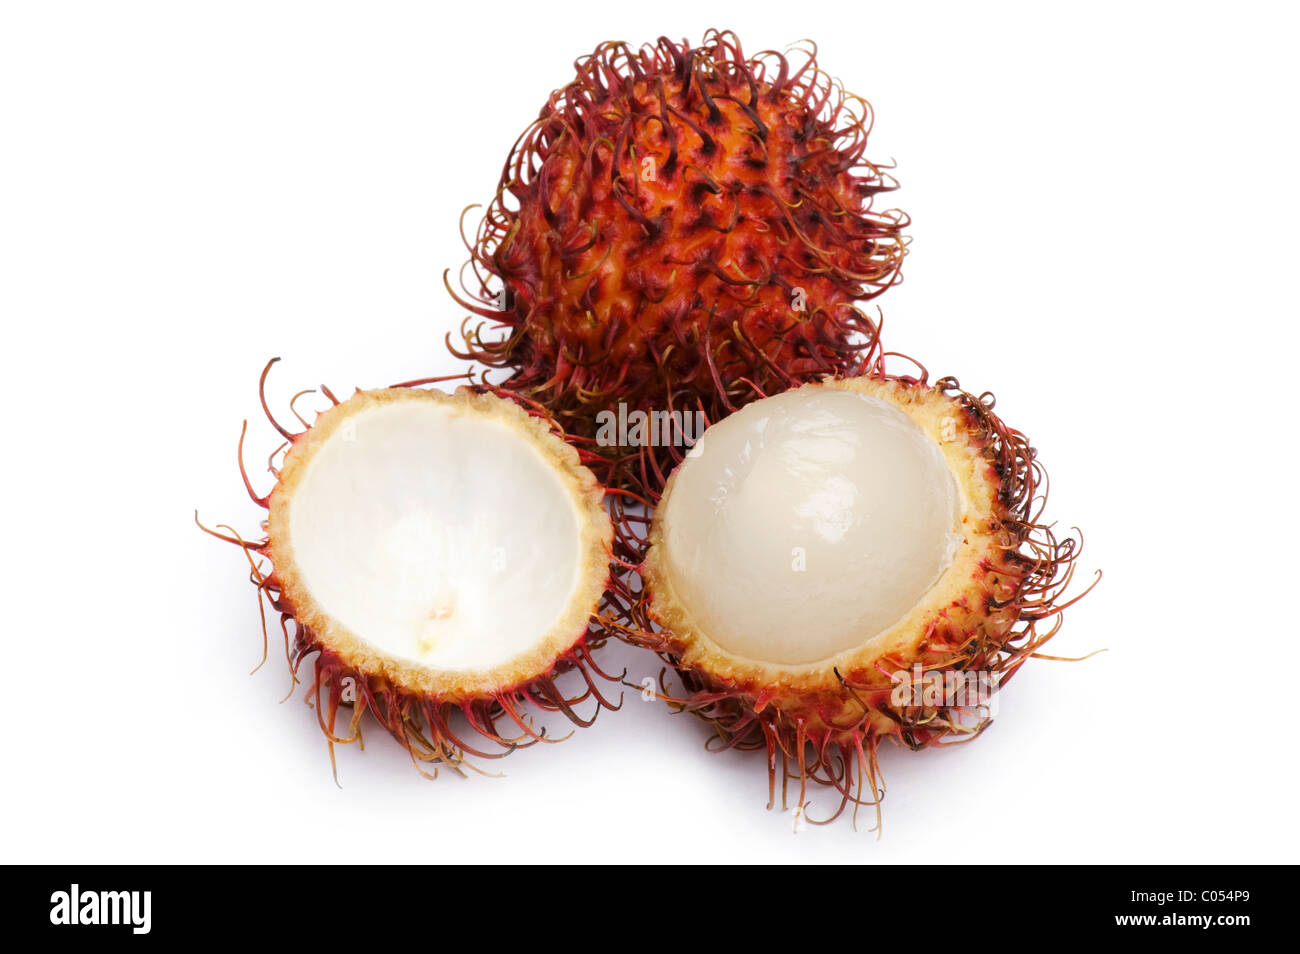 object on white - food Rambutan close up Stock Photo